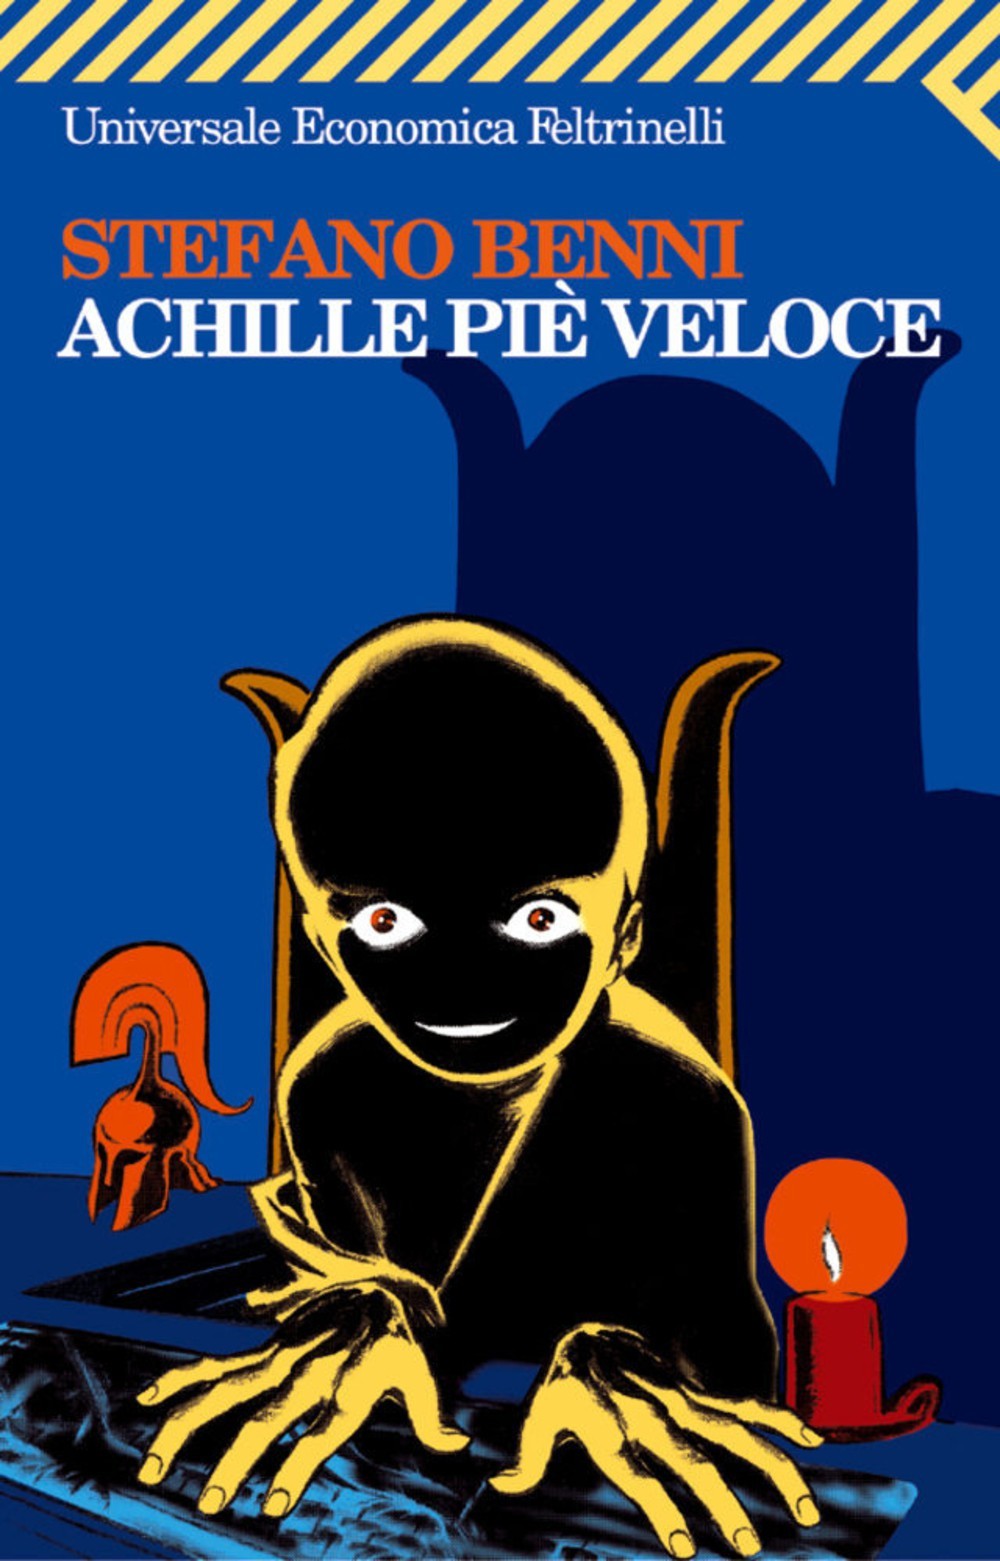 More about Achille piè veloce